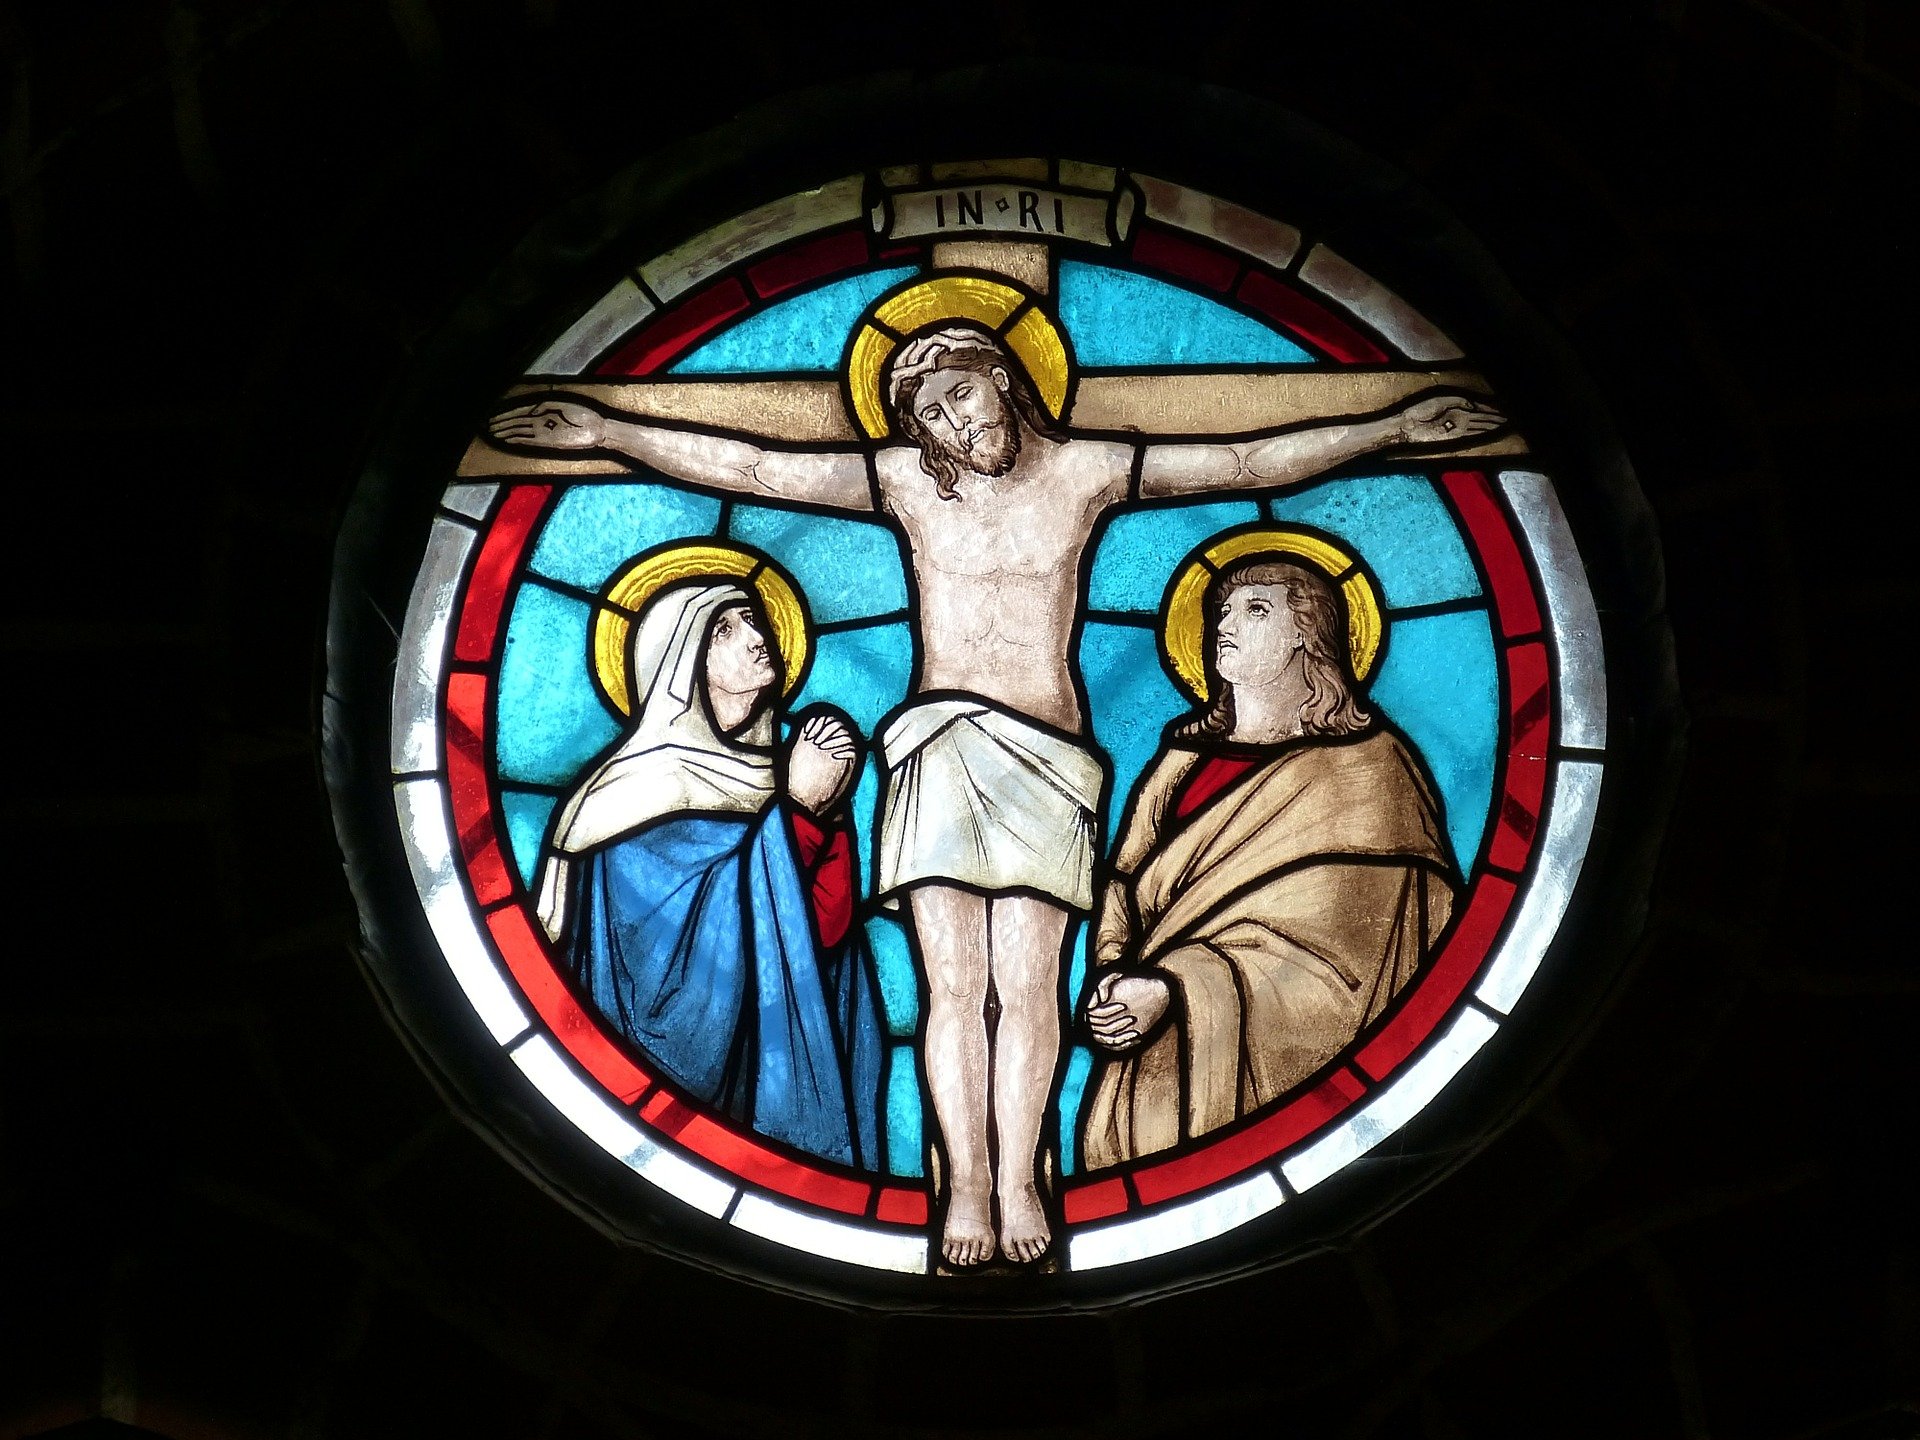 십자가의 예수님을 표현한 스테인드글라스